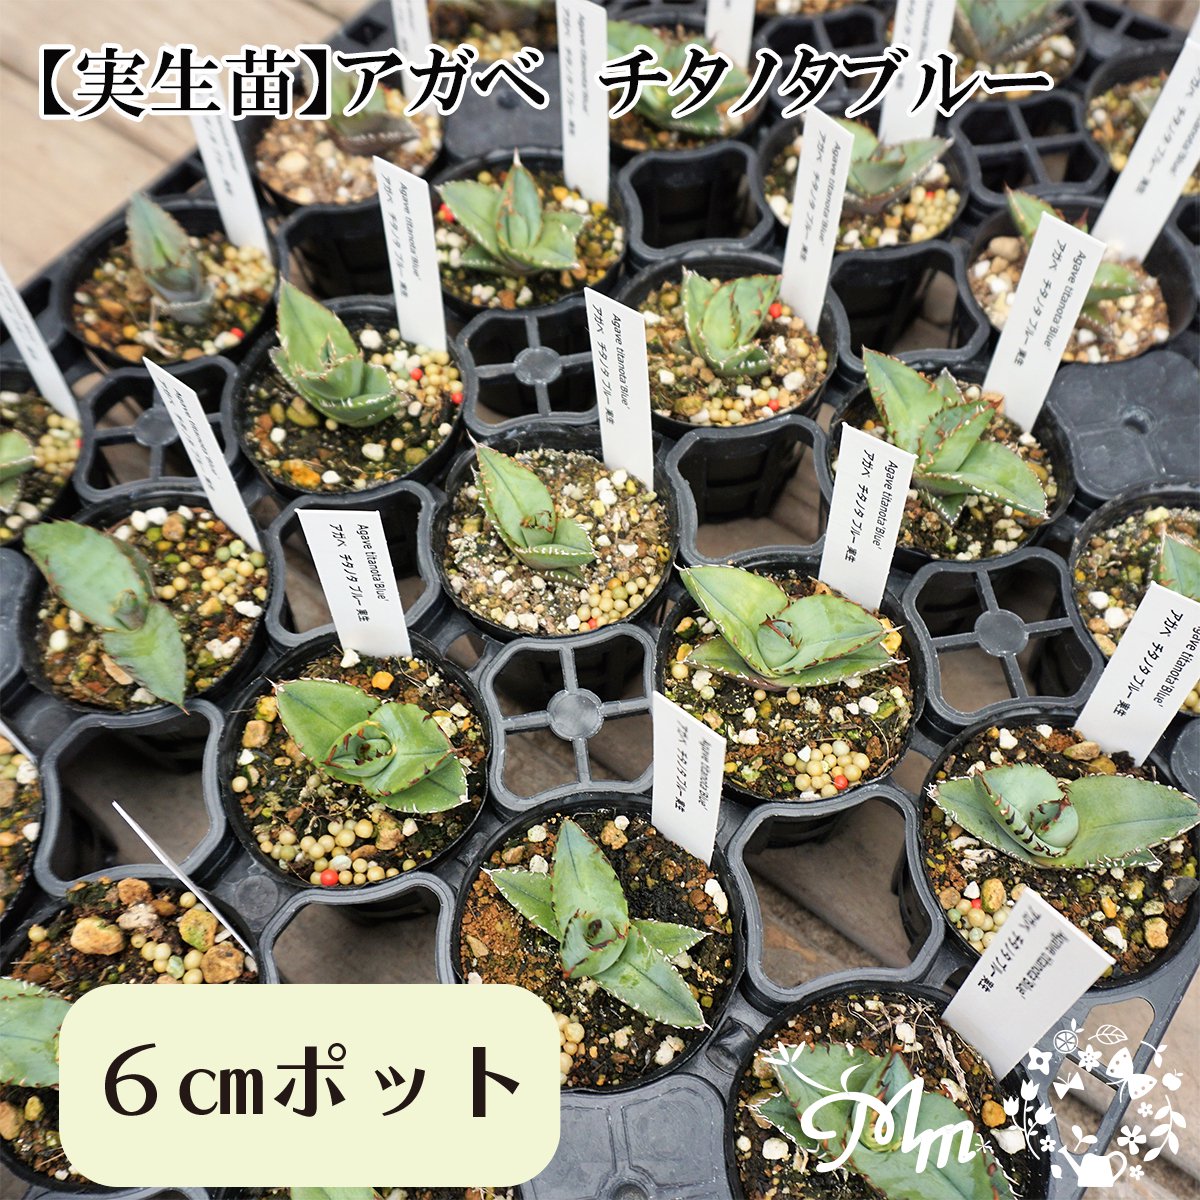 実生苗(実生株)】Agave titanota blue(アガベ チタノタブルー)6㎝ポット苗